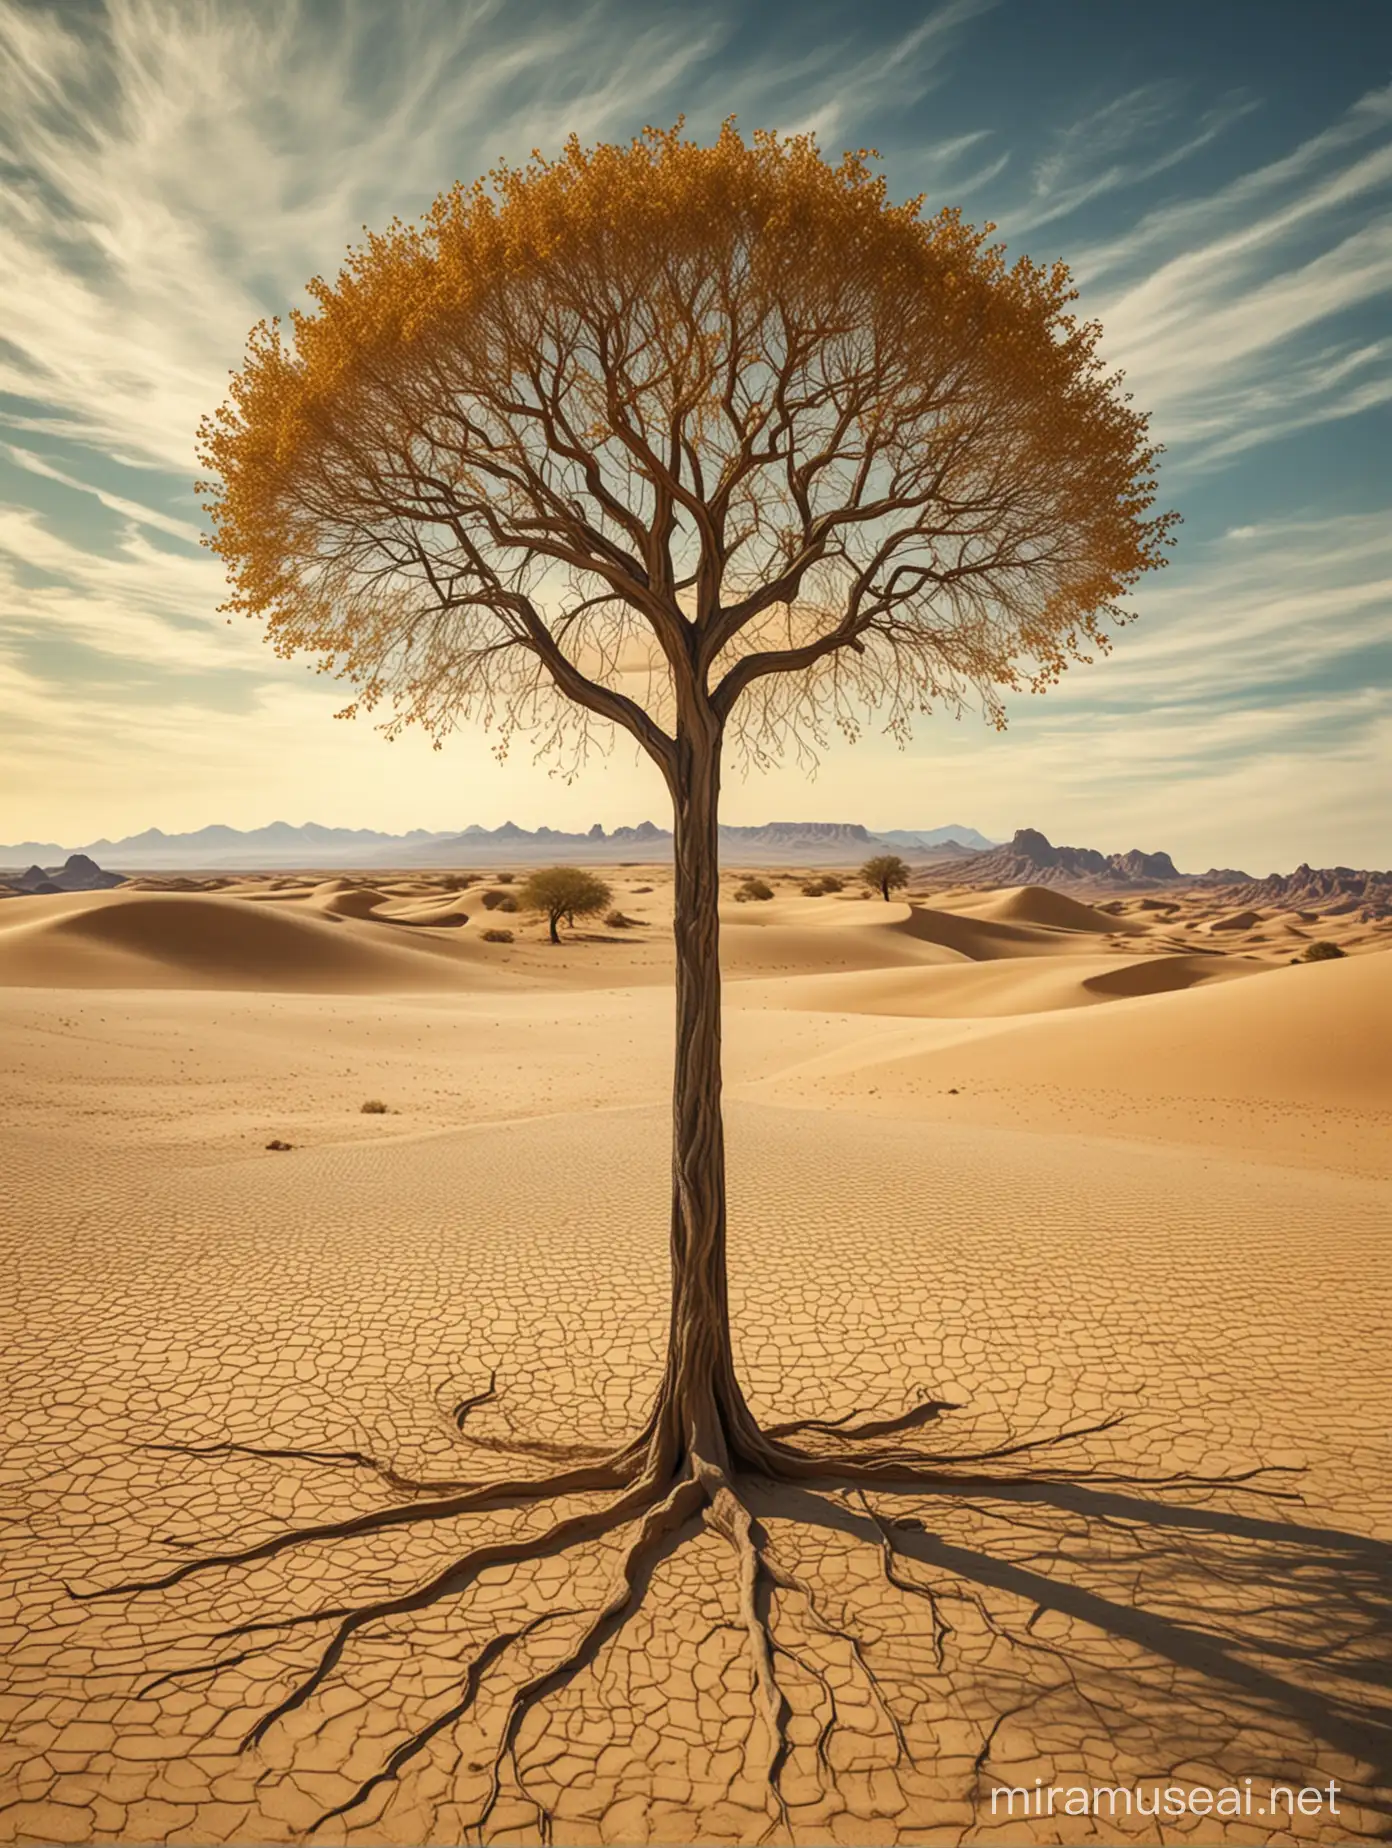 Surreal Desert Oasis Whimsical Tree Amidst Golden Sand Dunes